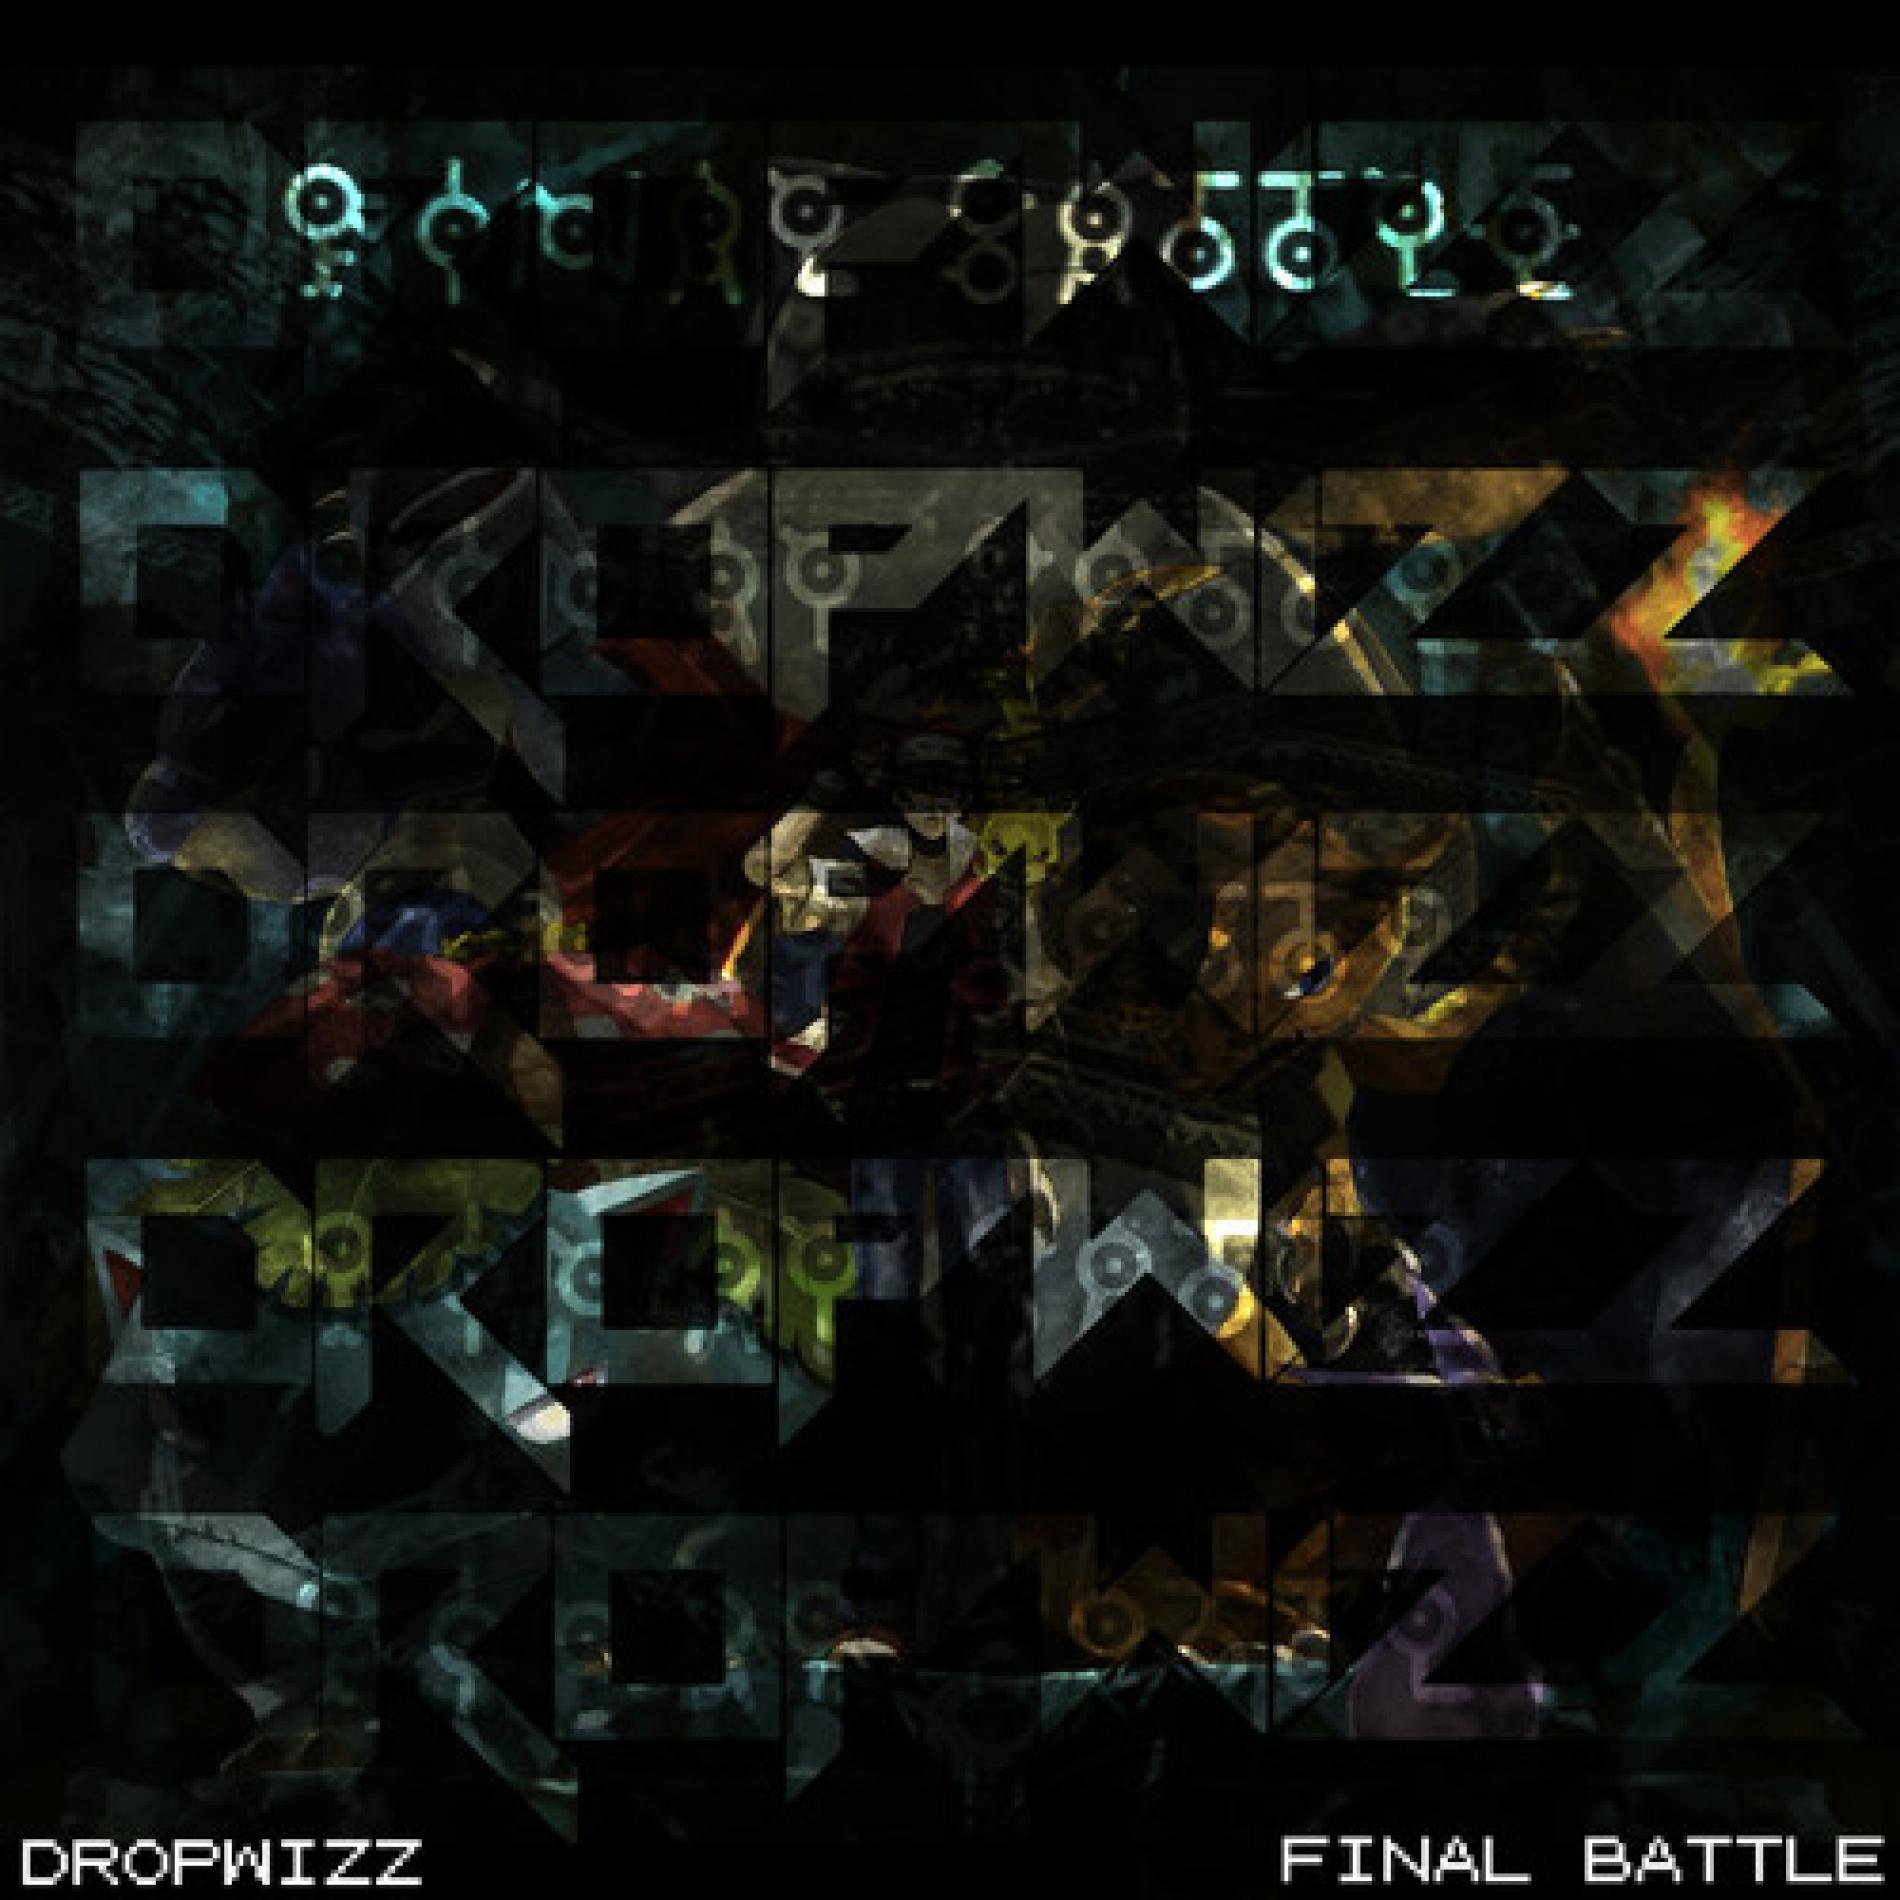 Dropwizz: Final Battle